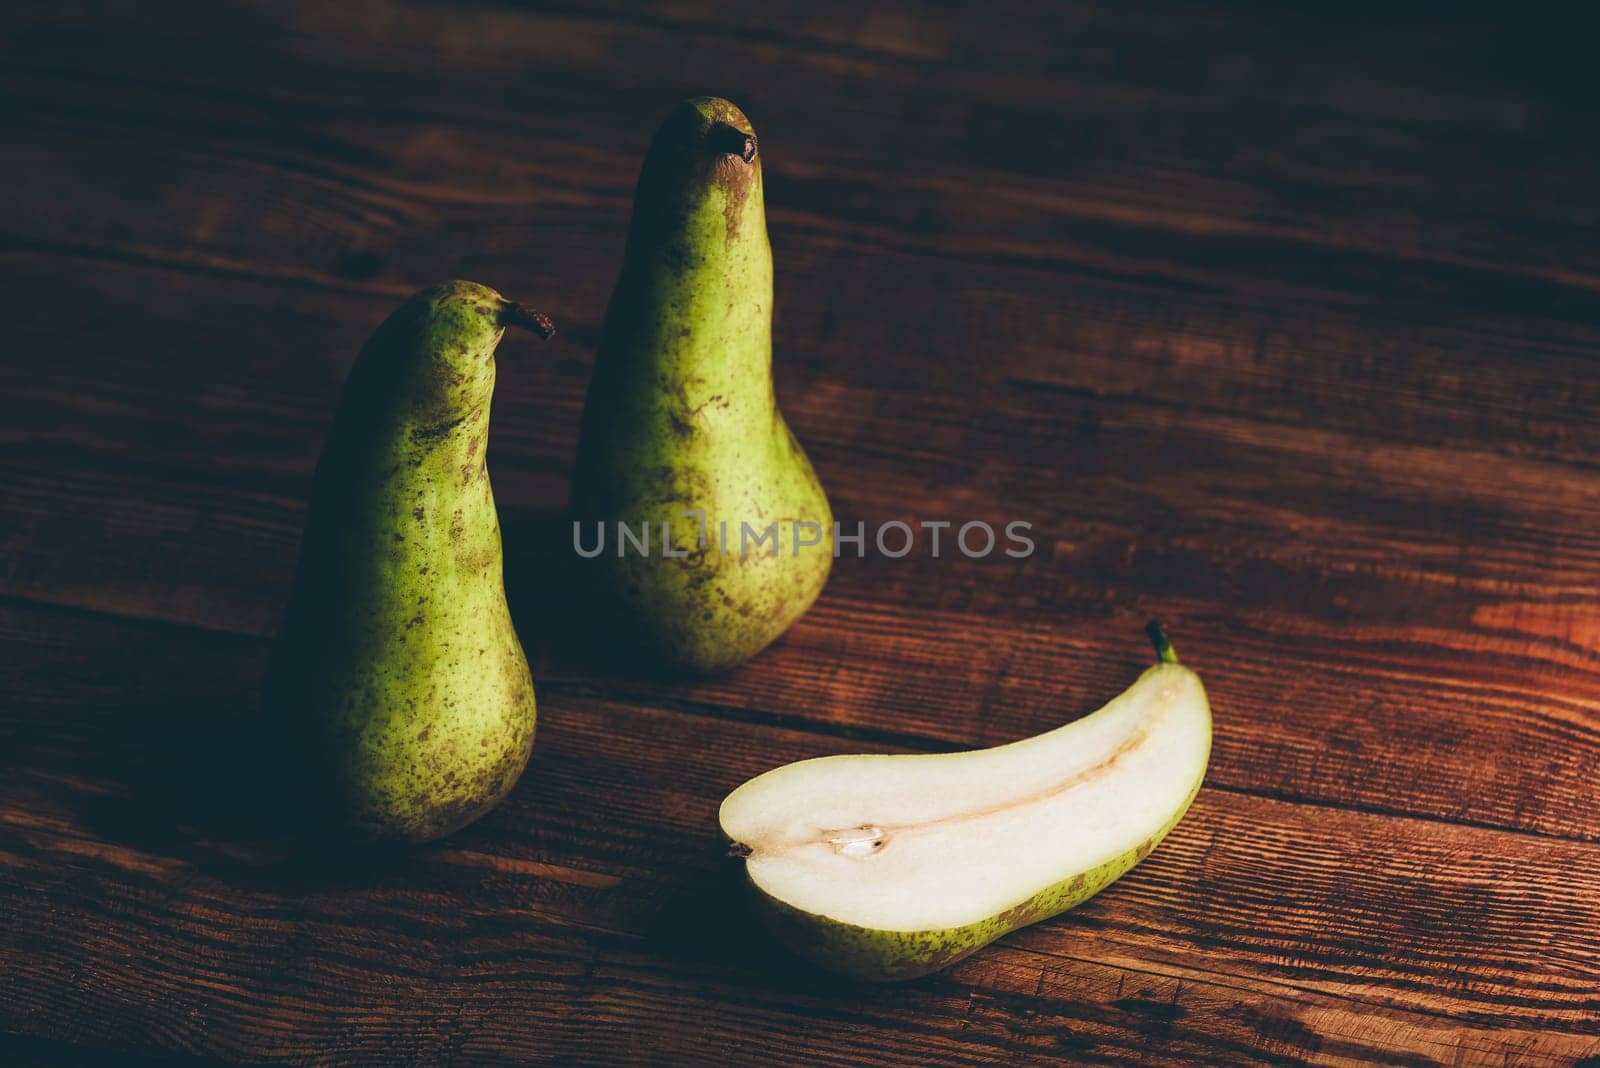 Still Life with Pears by Seva_blsv